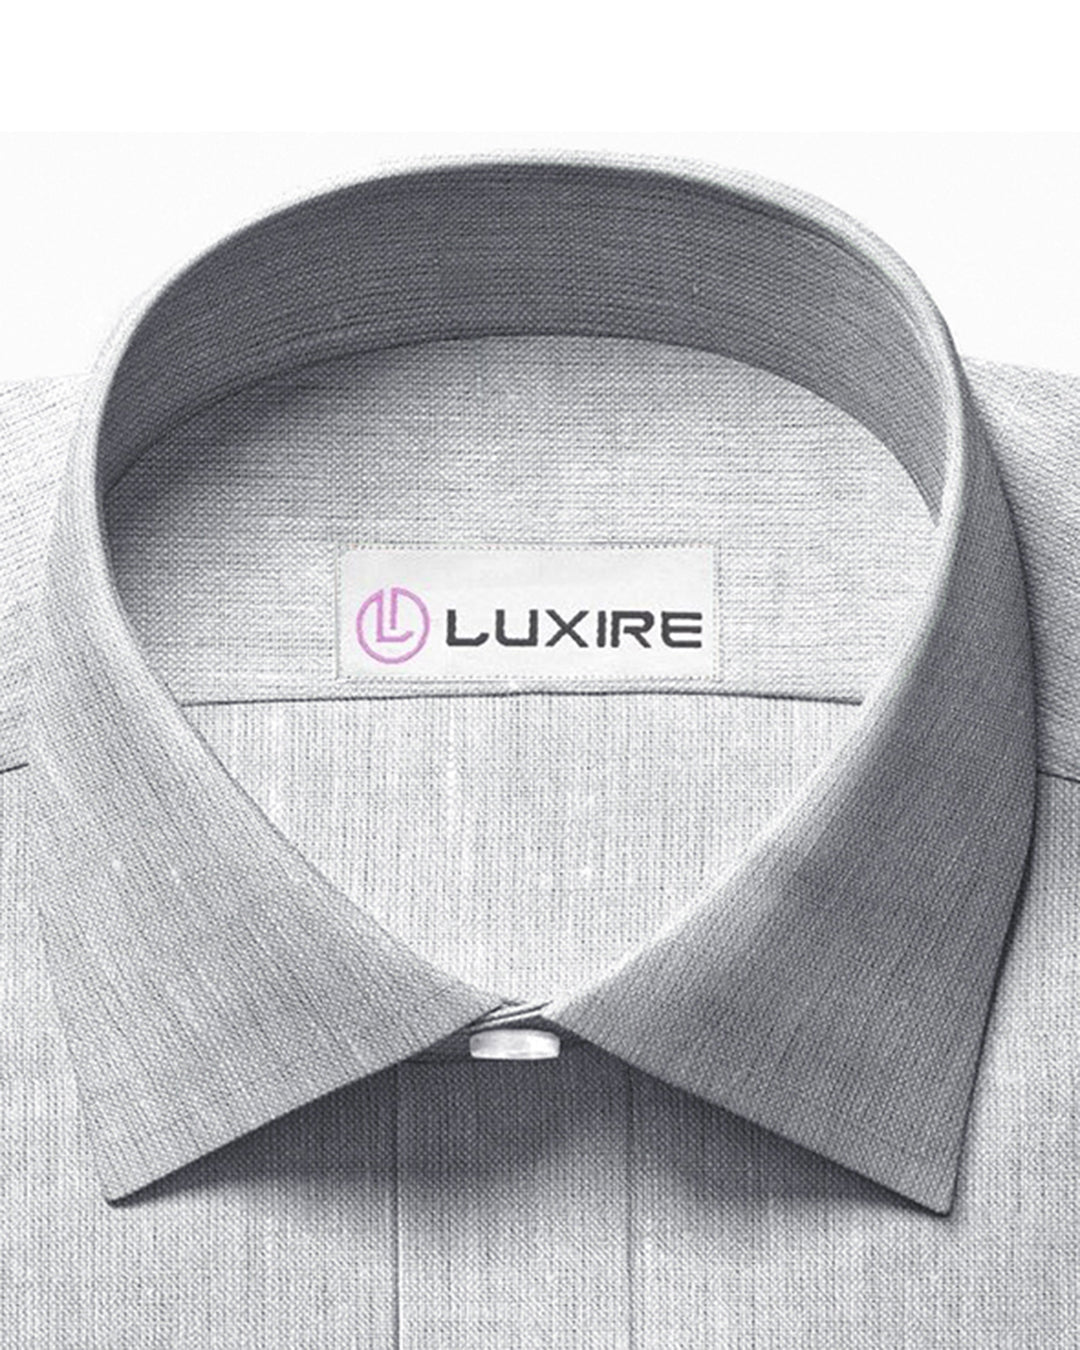 Collar of custom linen shirt for men in light grey